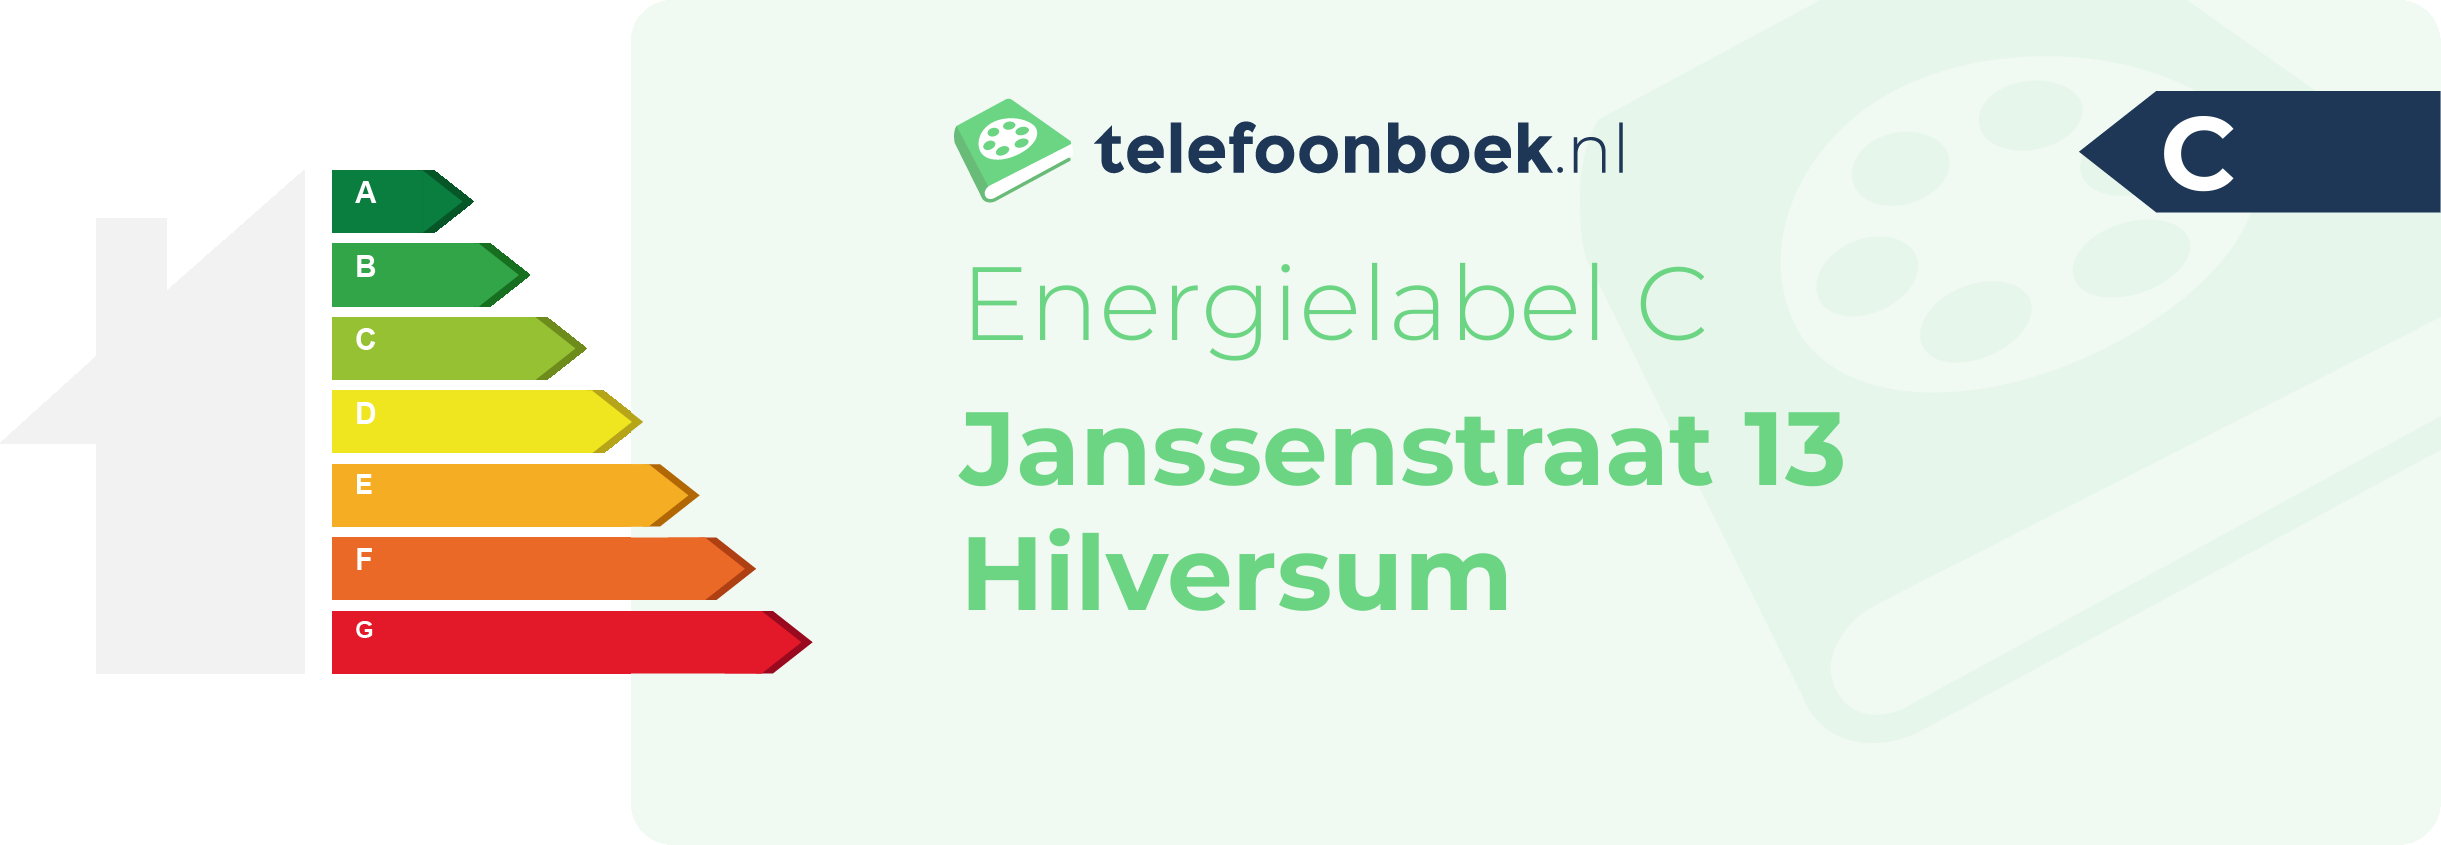 Energielabel Janssenstraat 13 Hilversum